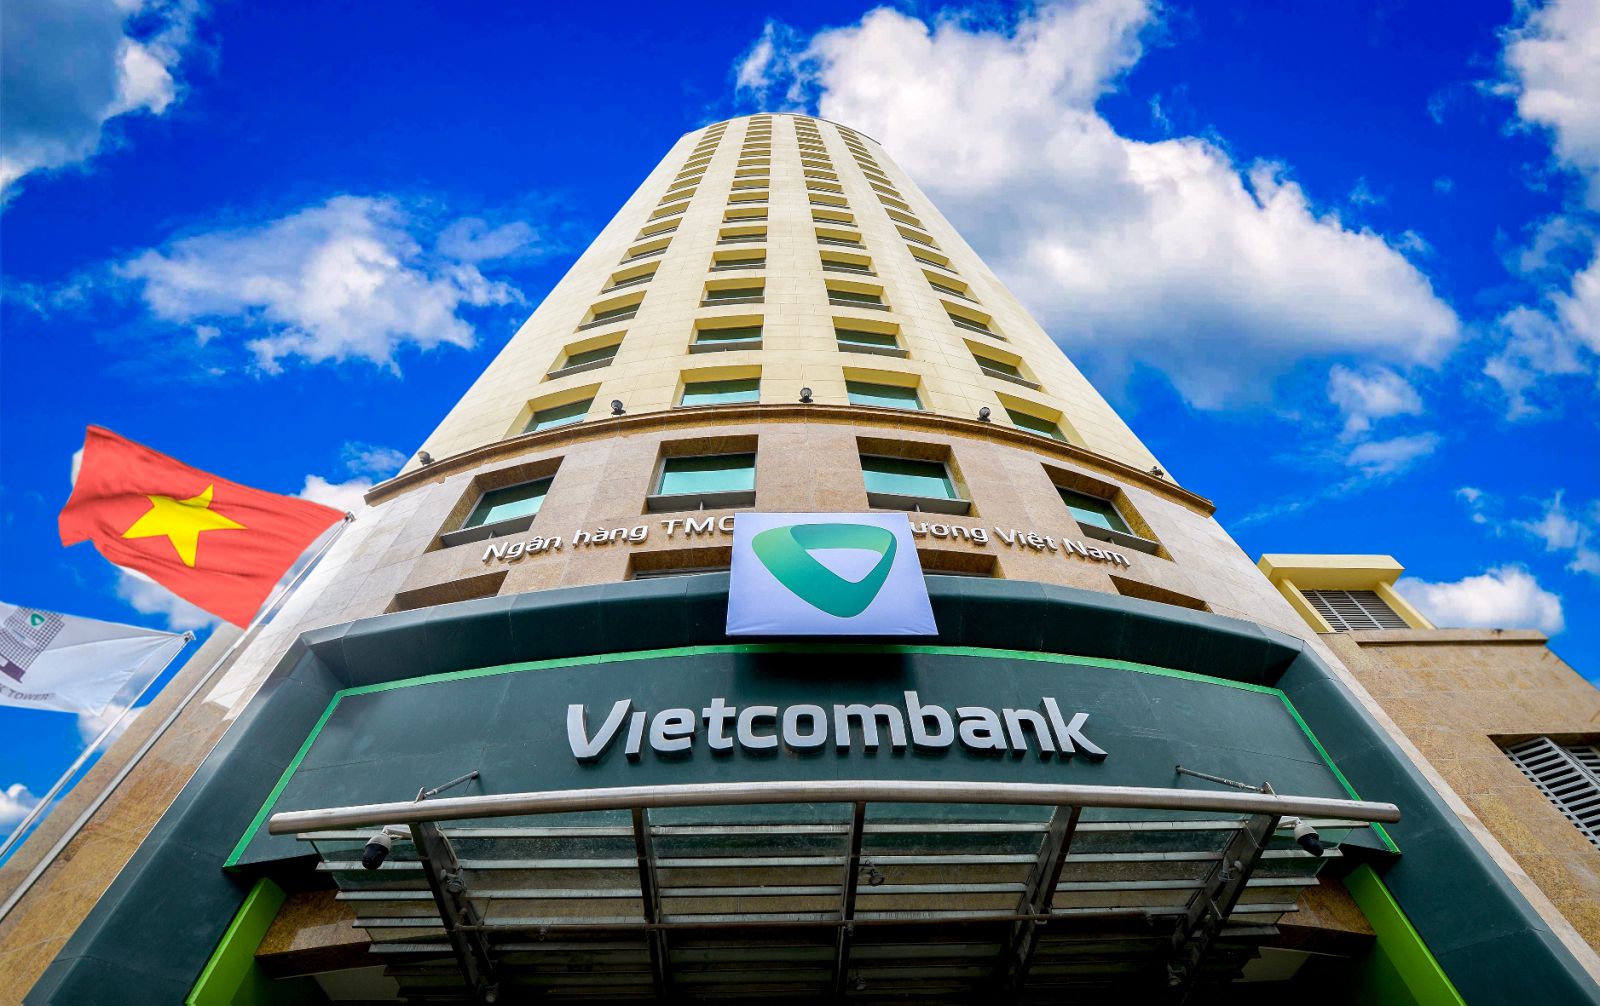 Vietcombank – ngân hàng vốn có thế mạnh phục vụ các doanh nghiệp nước ngoài và các doanh nghiệp FDI. Do đó đây sẽ là cơ hội rất lớn cho Vietcombank